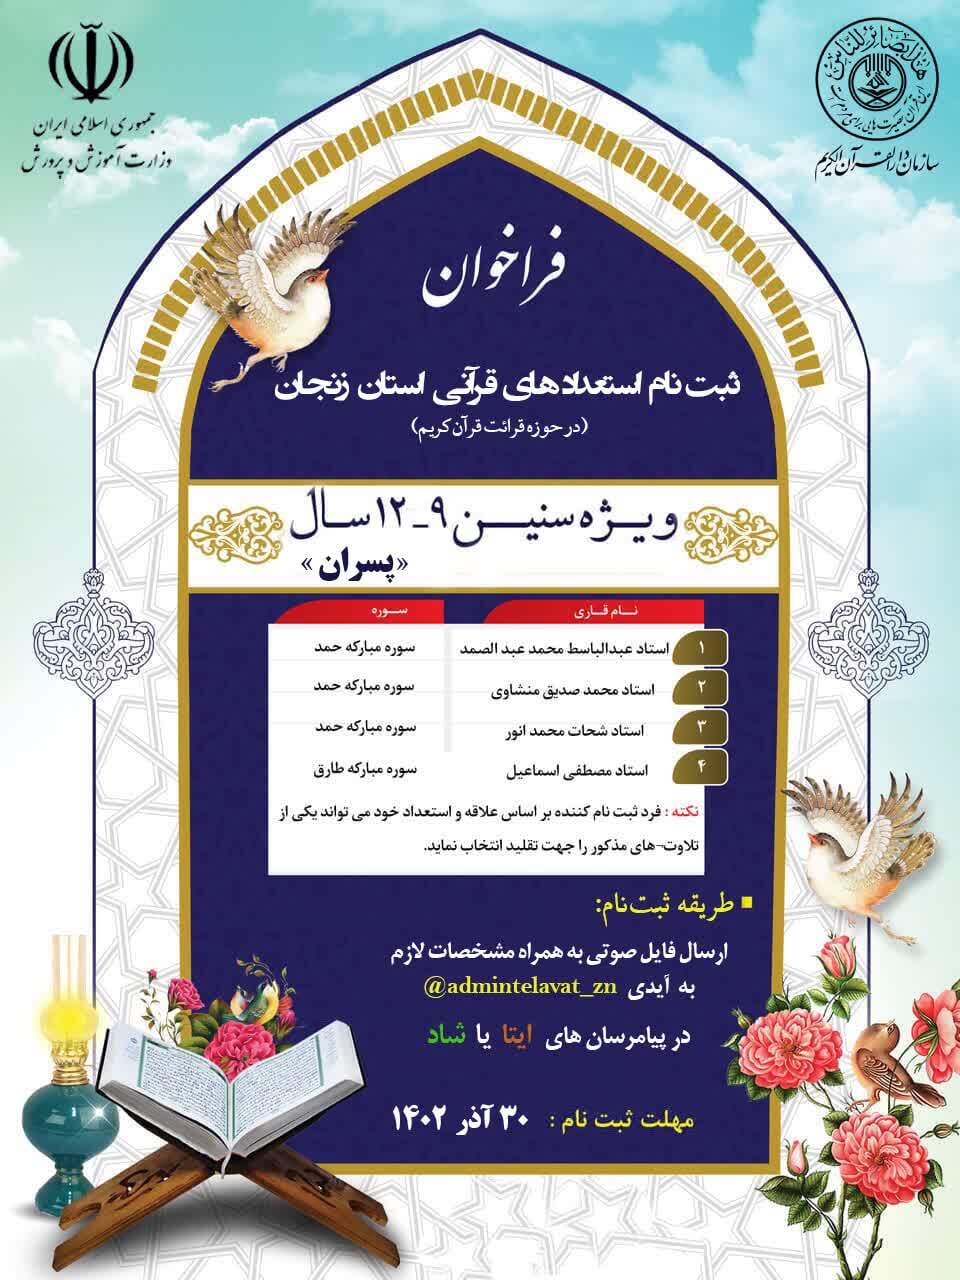 دوره تخصصی استعدادهای قرآنی در زنجان برگزار می شود